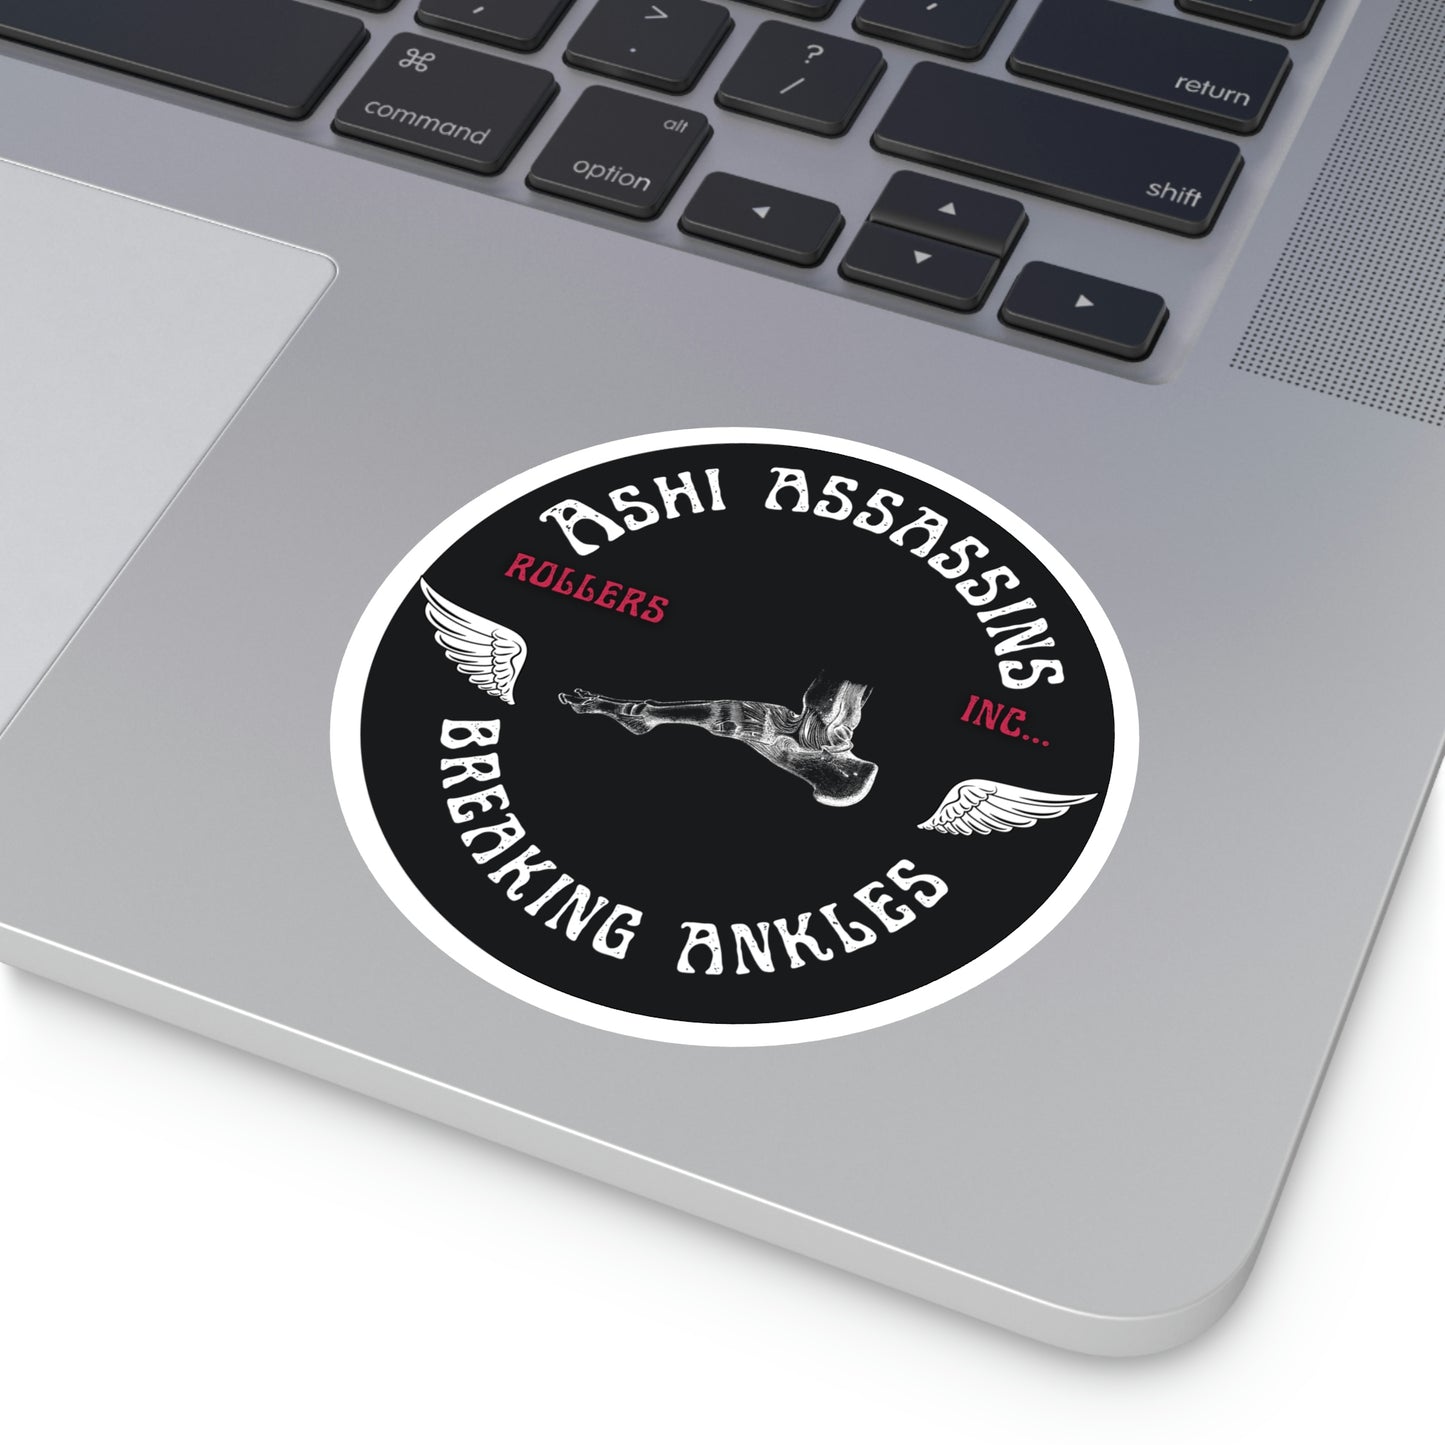 Ashi Assassins Jiu Jitsu Stickers,